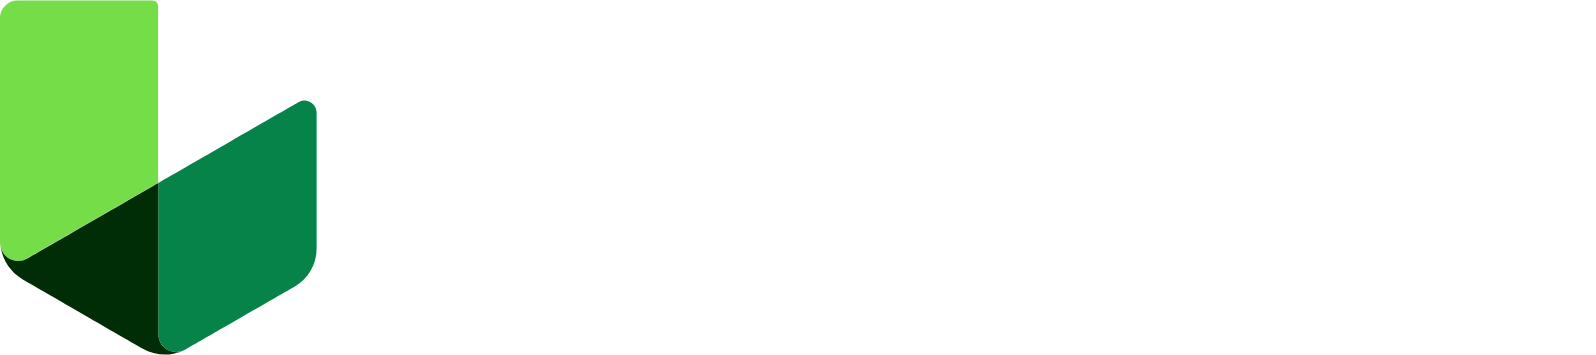 Lantheus Holdings logo large for dark backgrounds (transparent PNG)